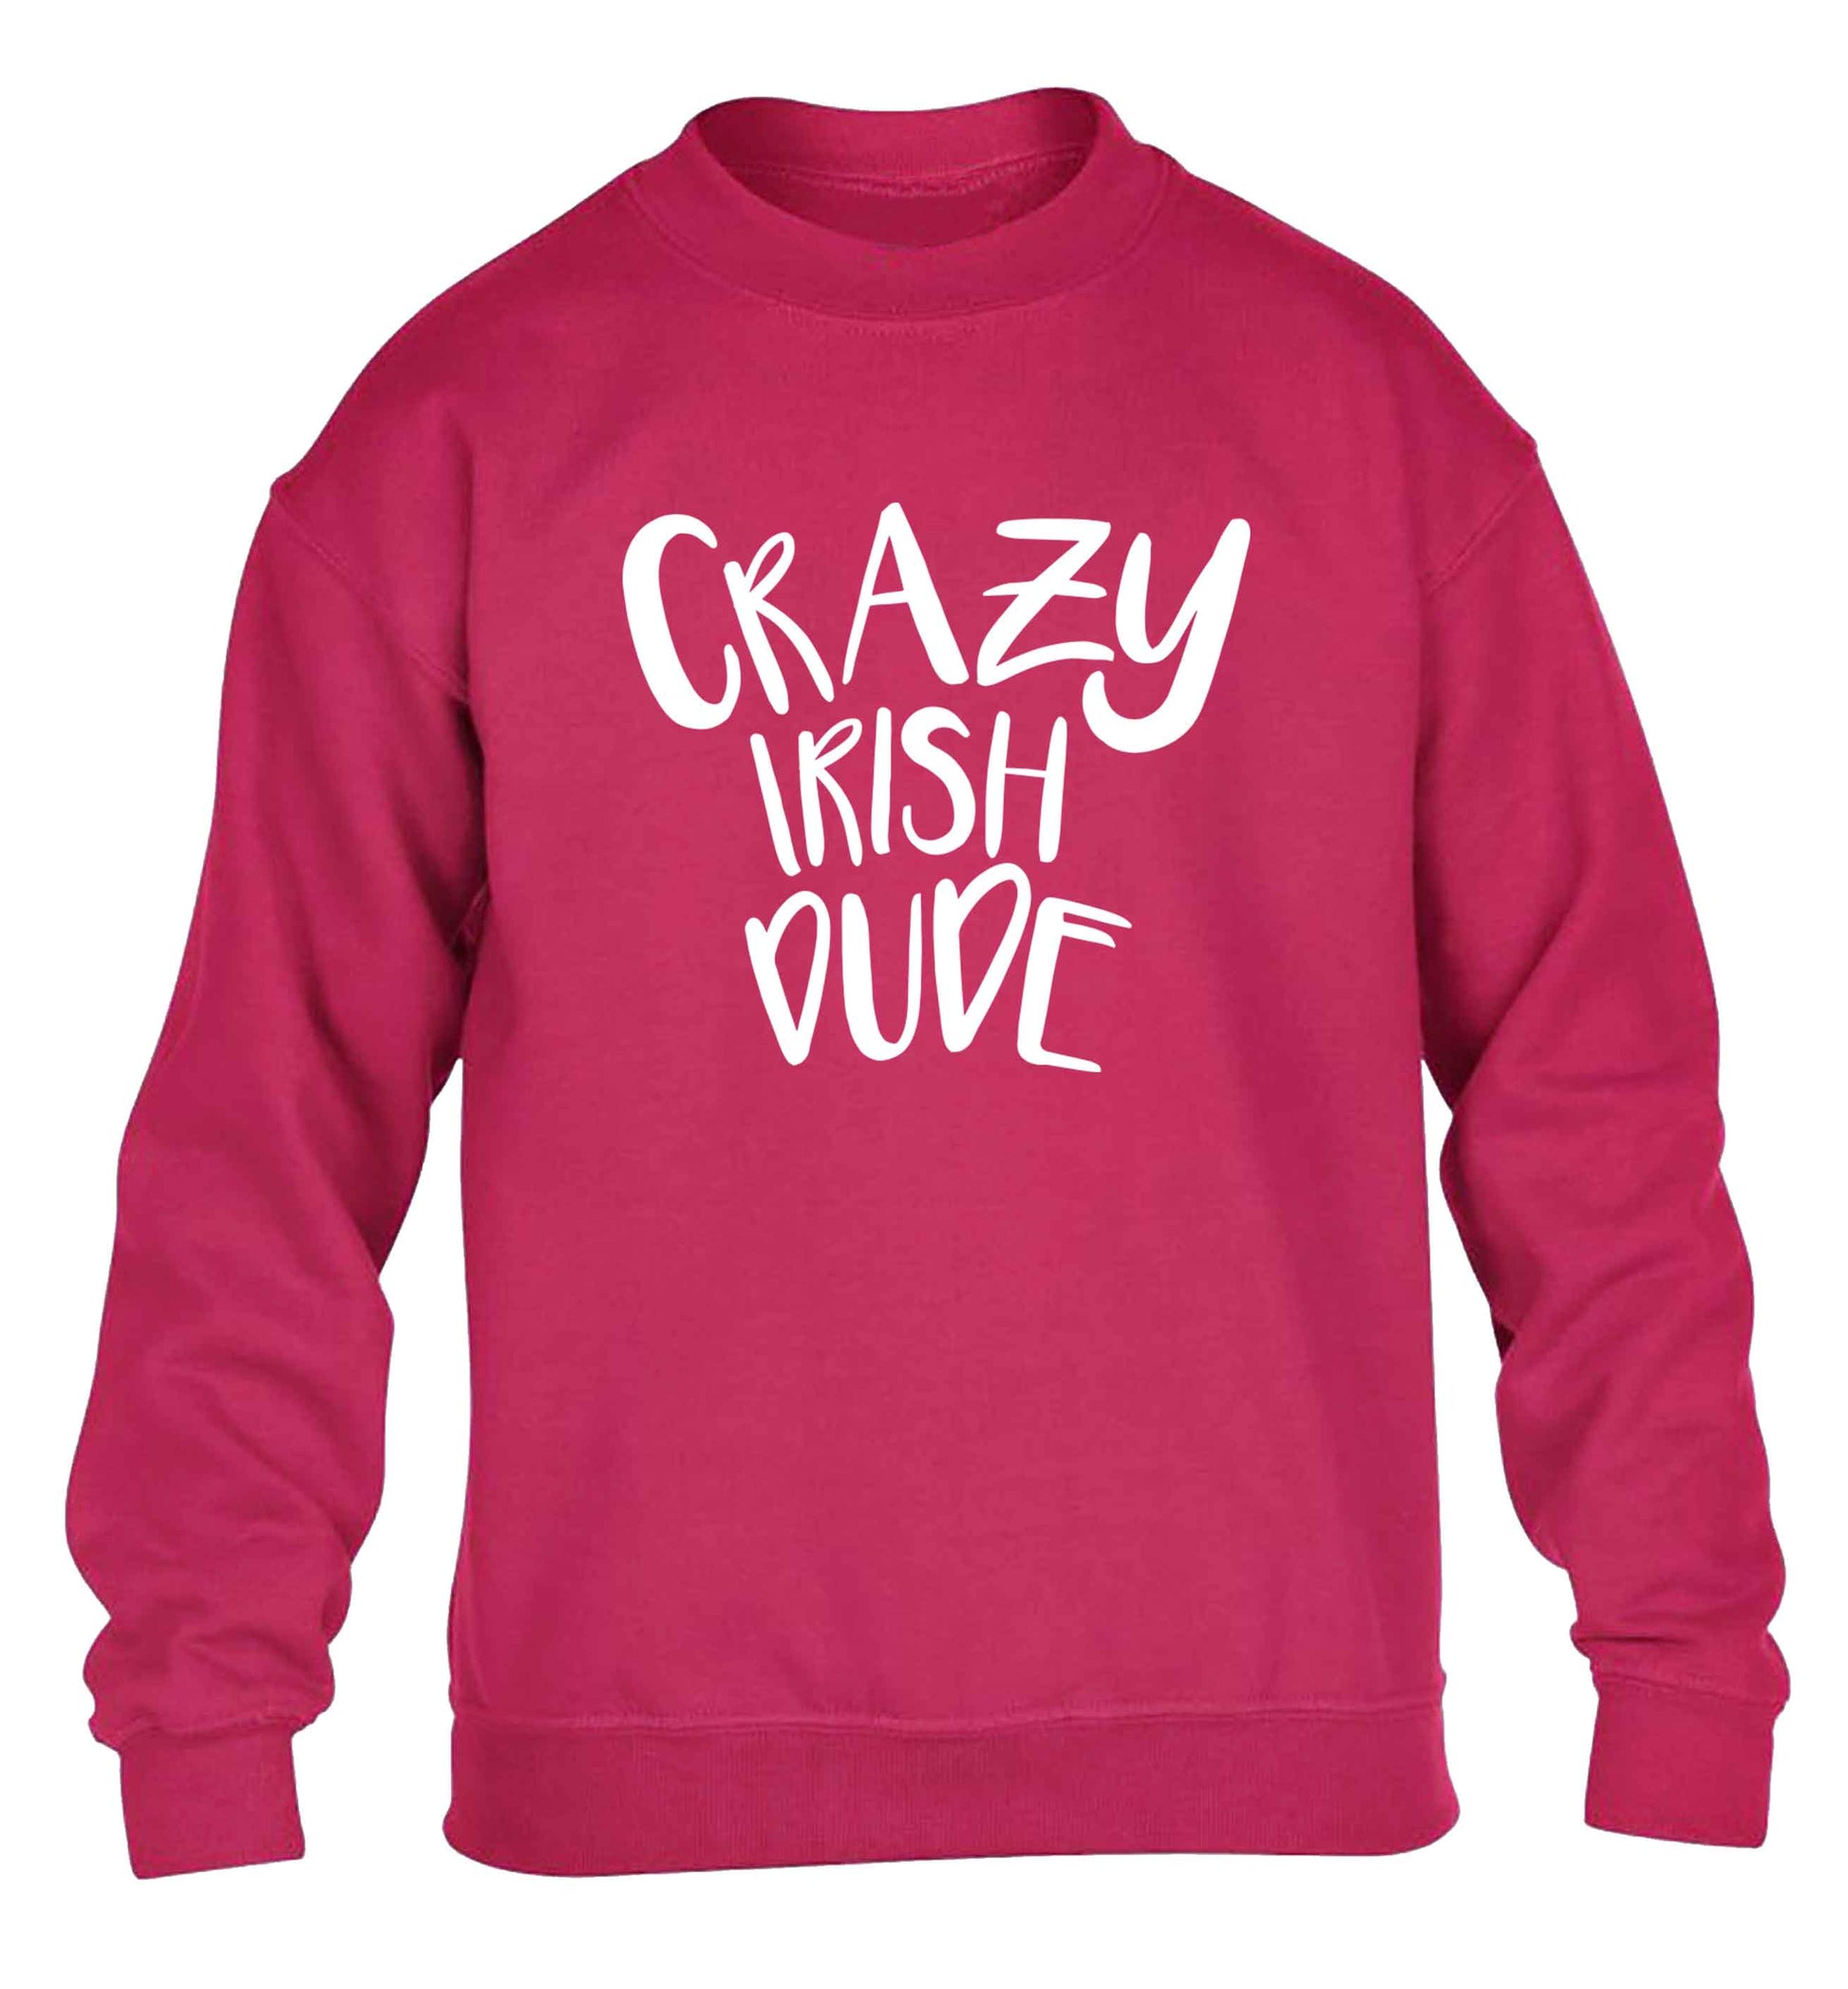 Crazy Irish dude children's pink sweater 12-13 Years